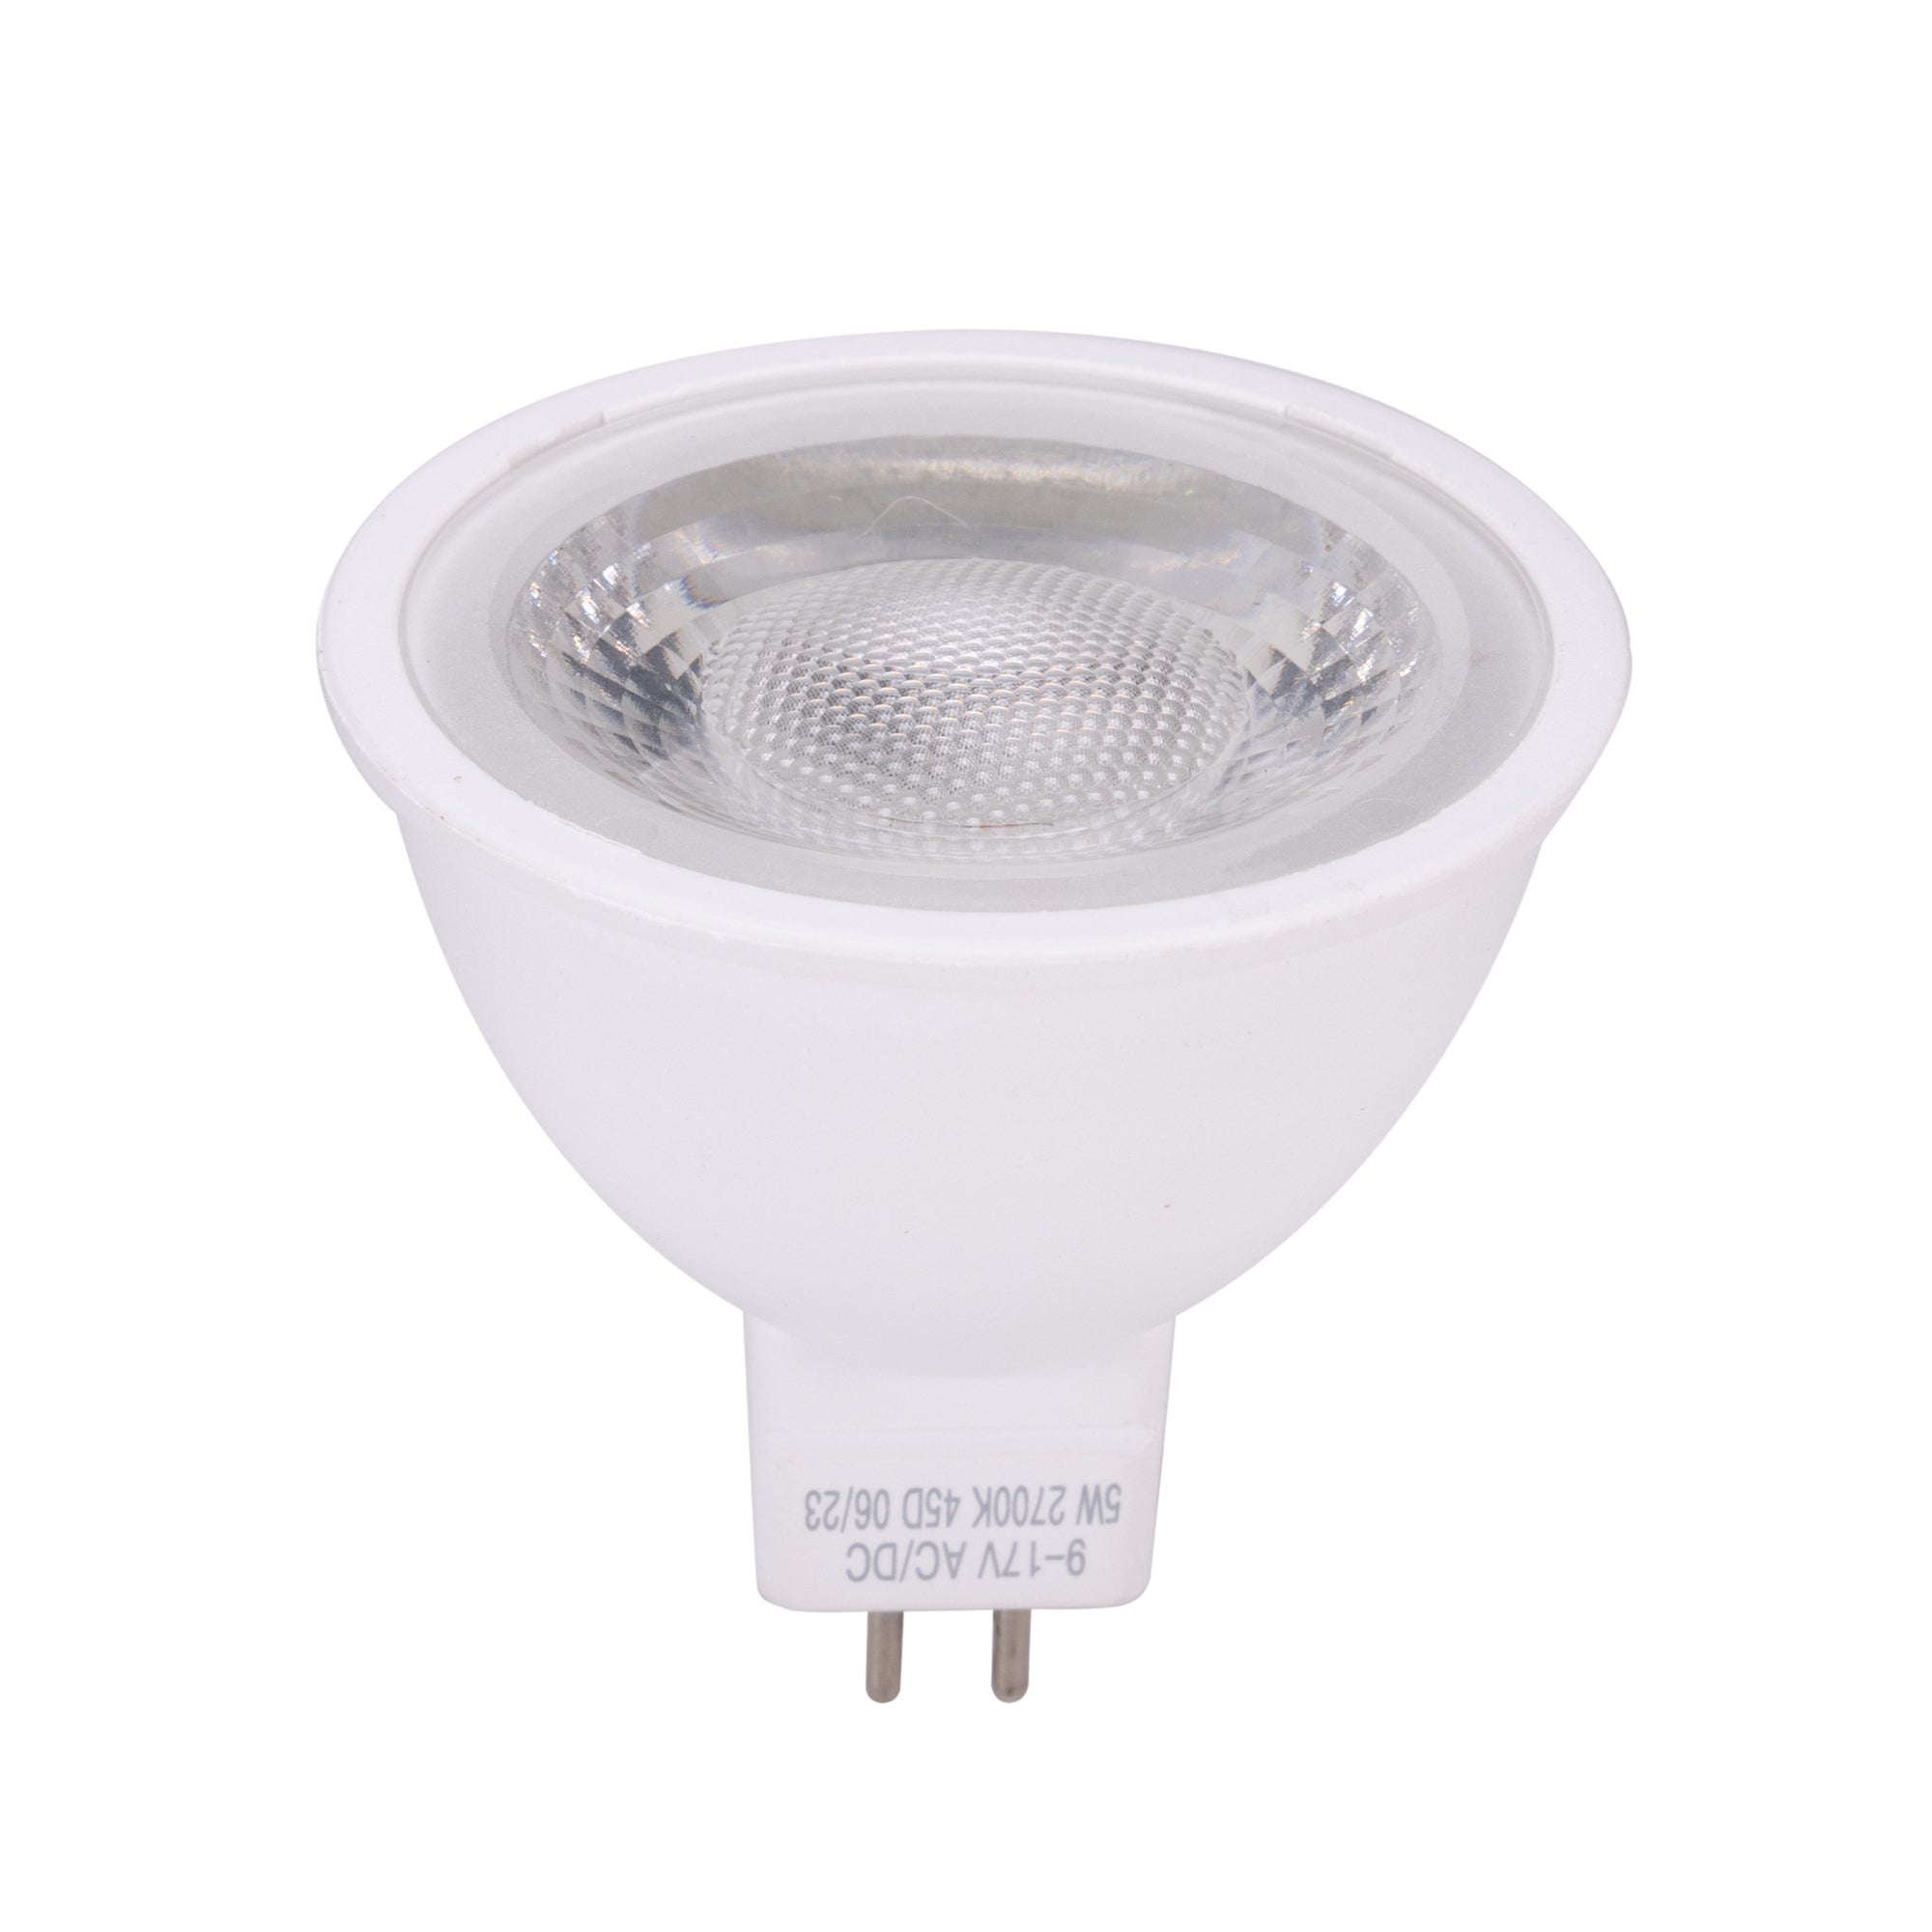 Gardenreet 5W Aluminum MR16 LED Bulb Dimmable, 2700K Warm White, AC/DC –  Gardenreet Lighting